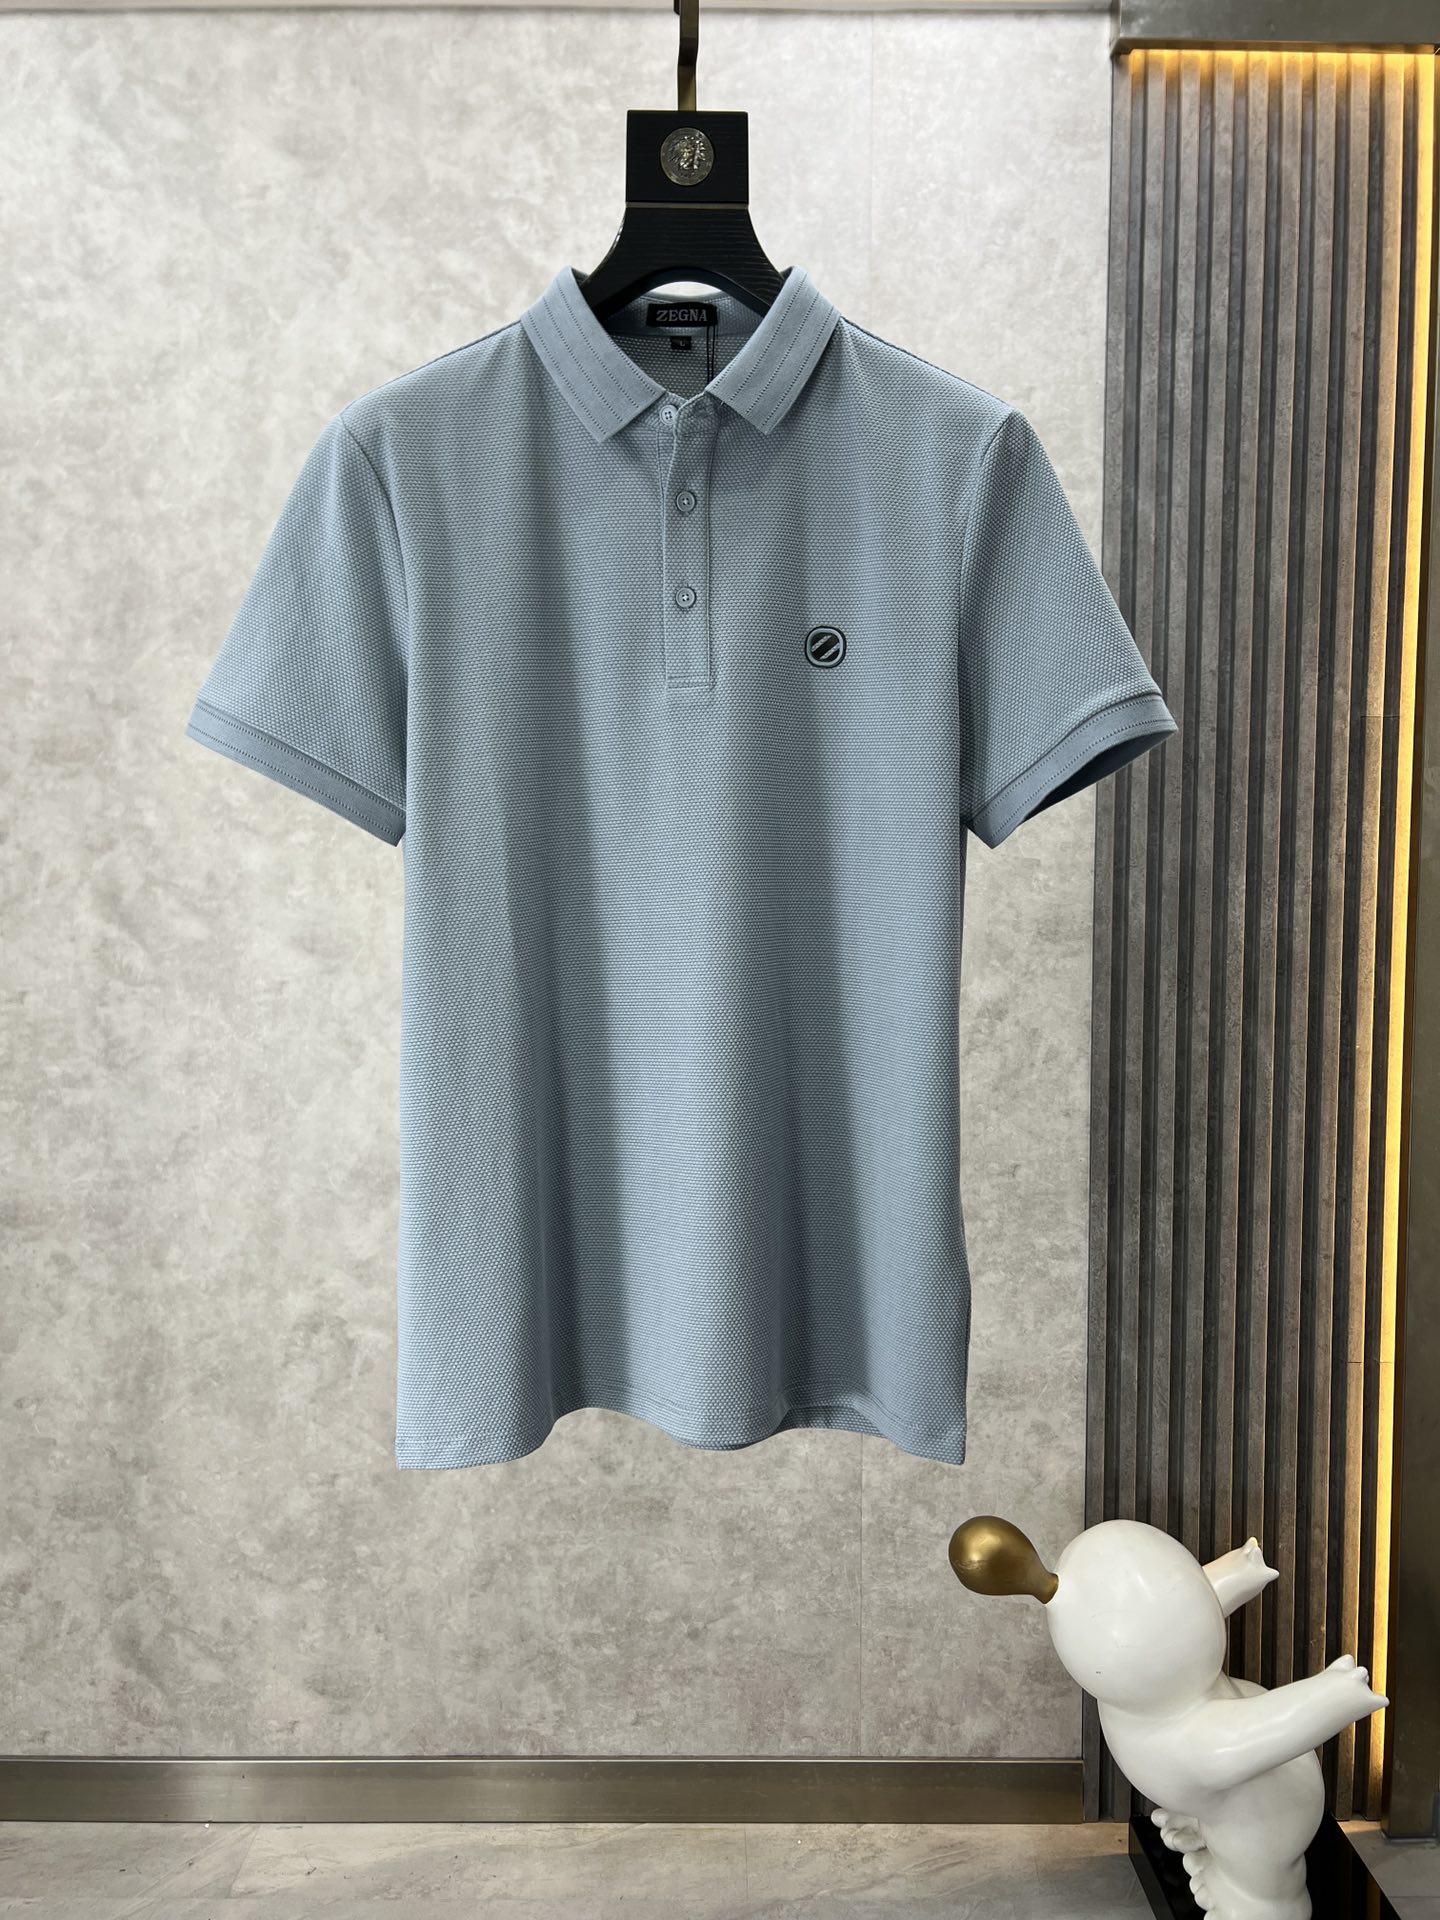 エルメネジルド・ゼニア Tシャツ コピー カジュアル 定番 半袖 ポロシャツ ライトブルー